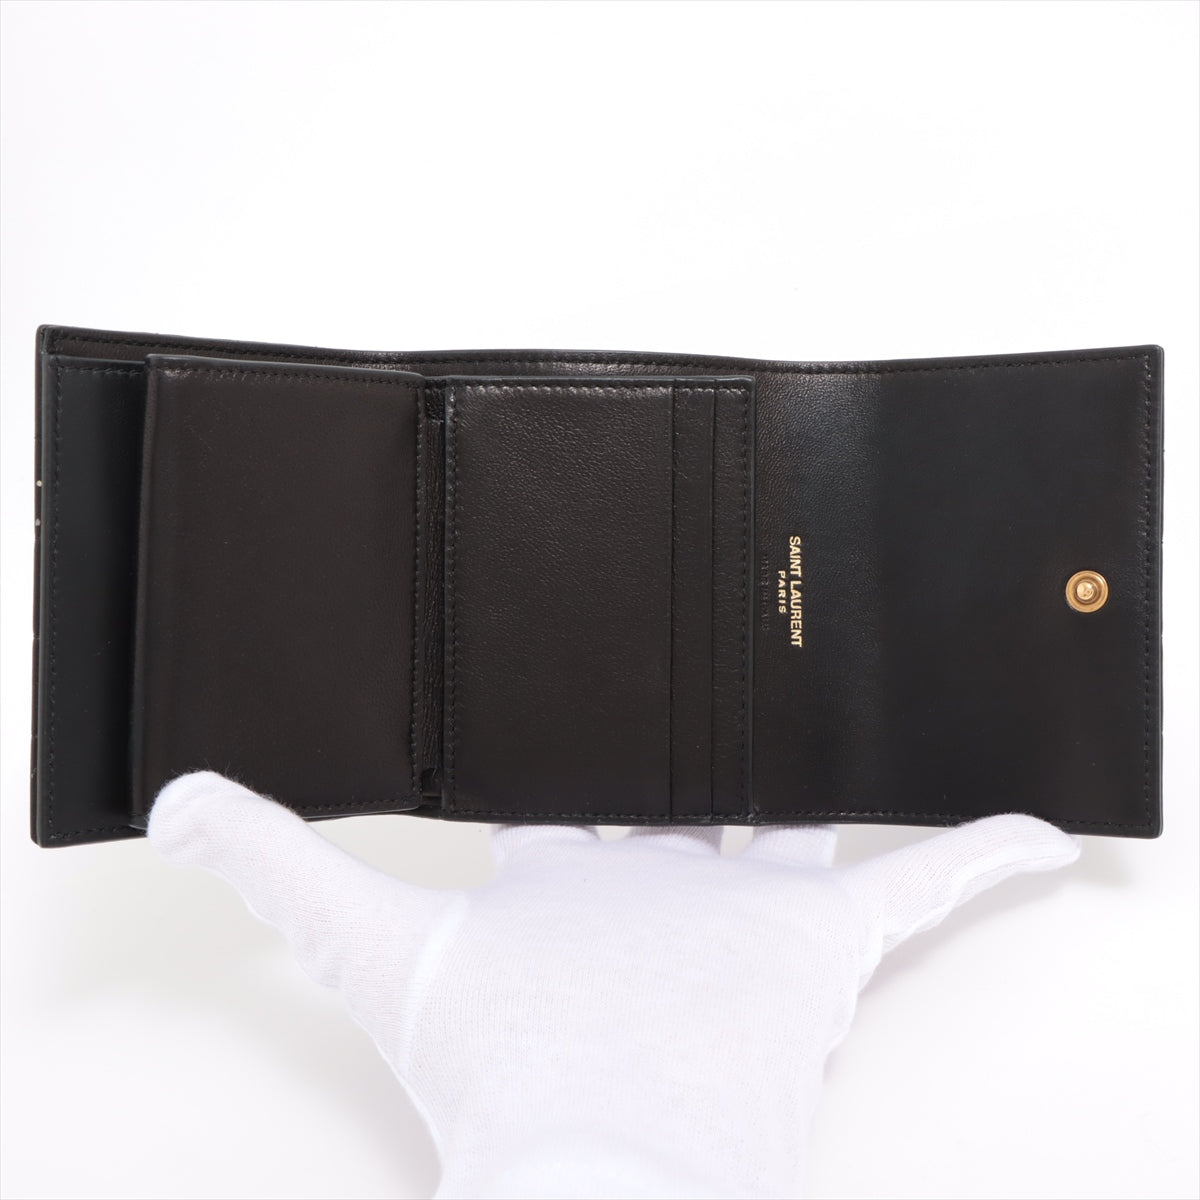 Saint Laurent Paris Leather Compact Wallet Black 759490